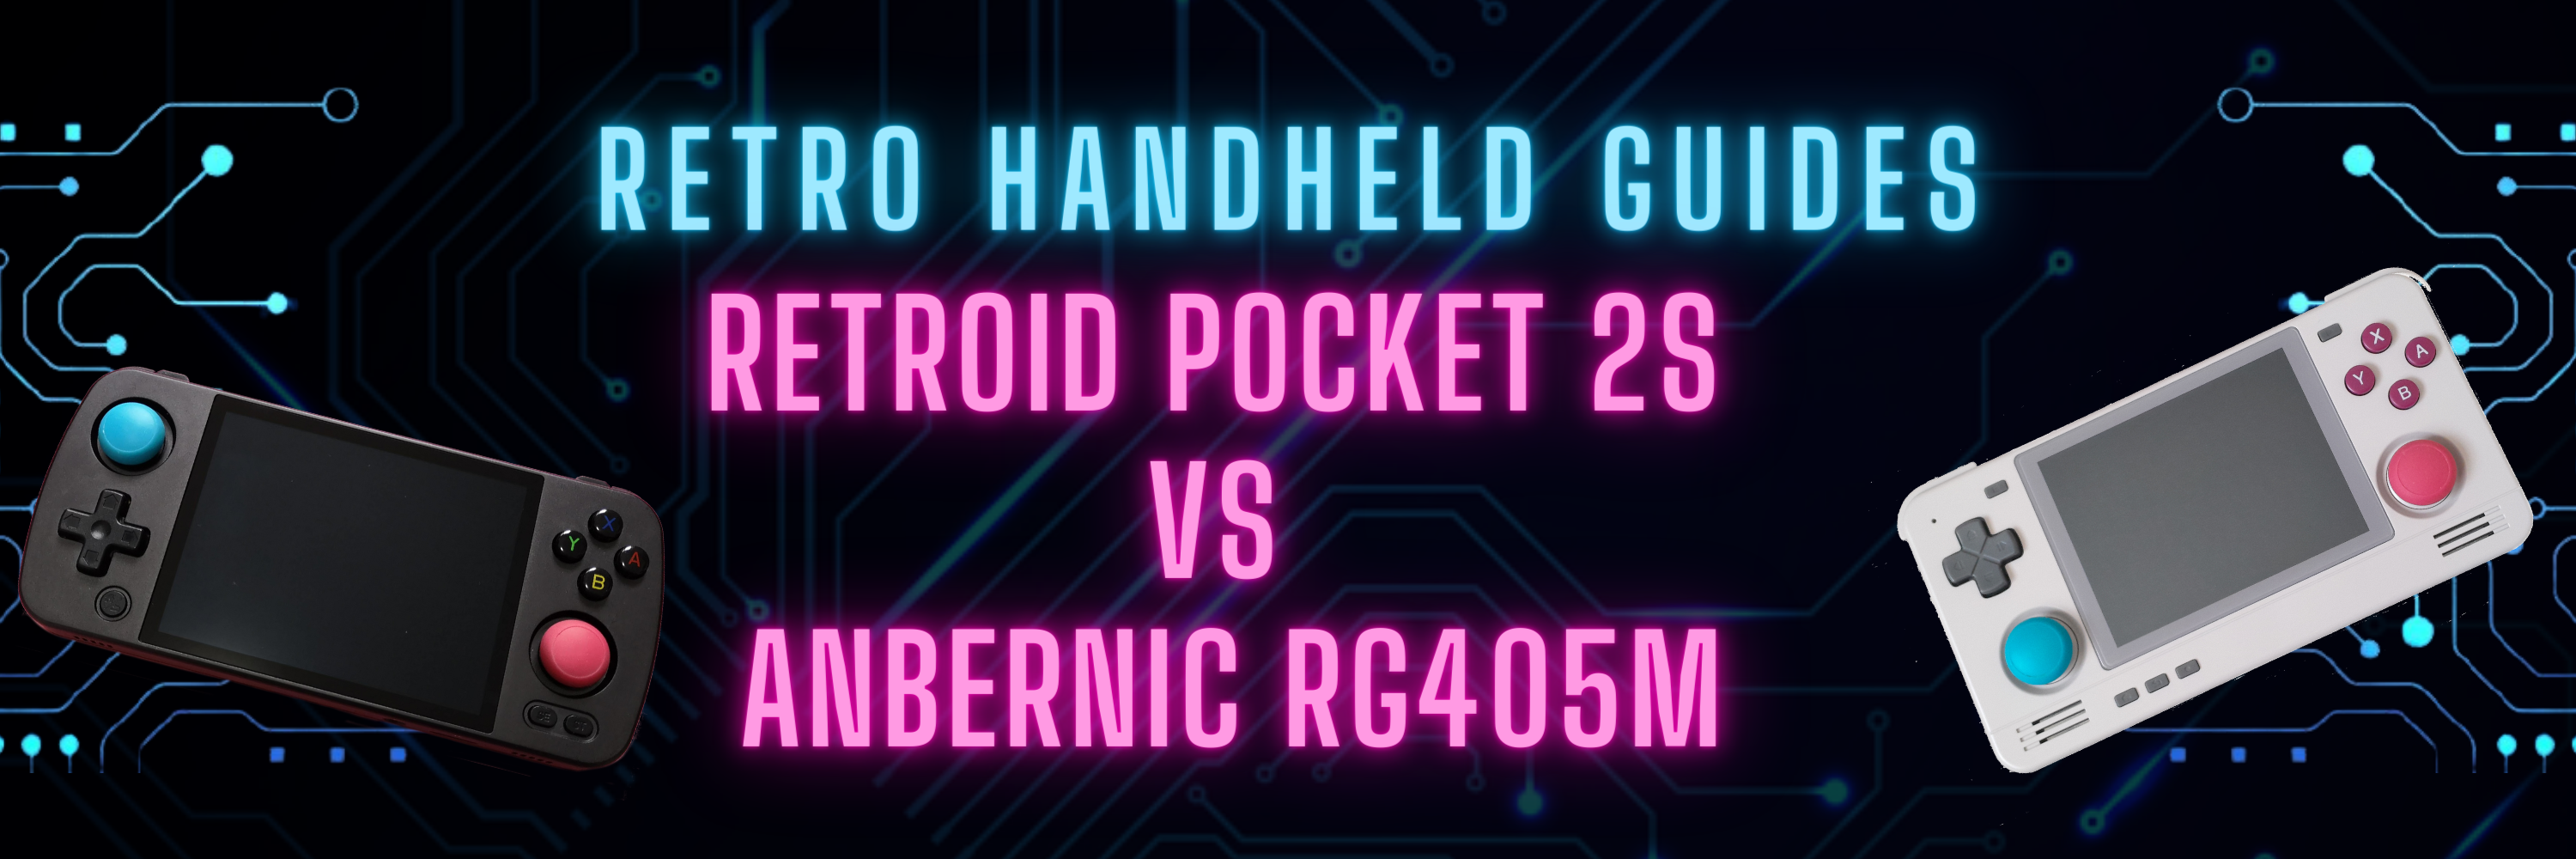 RP2S vs RG405M - Retro Handheld Guides